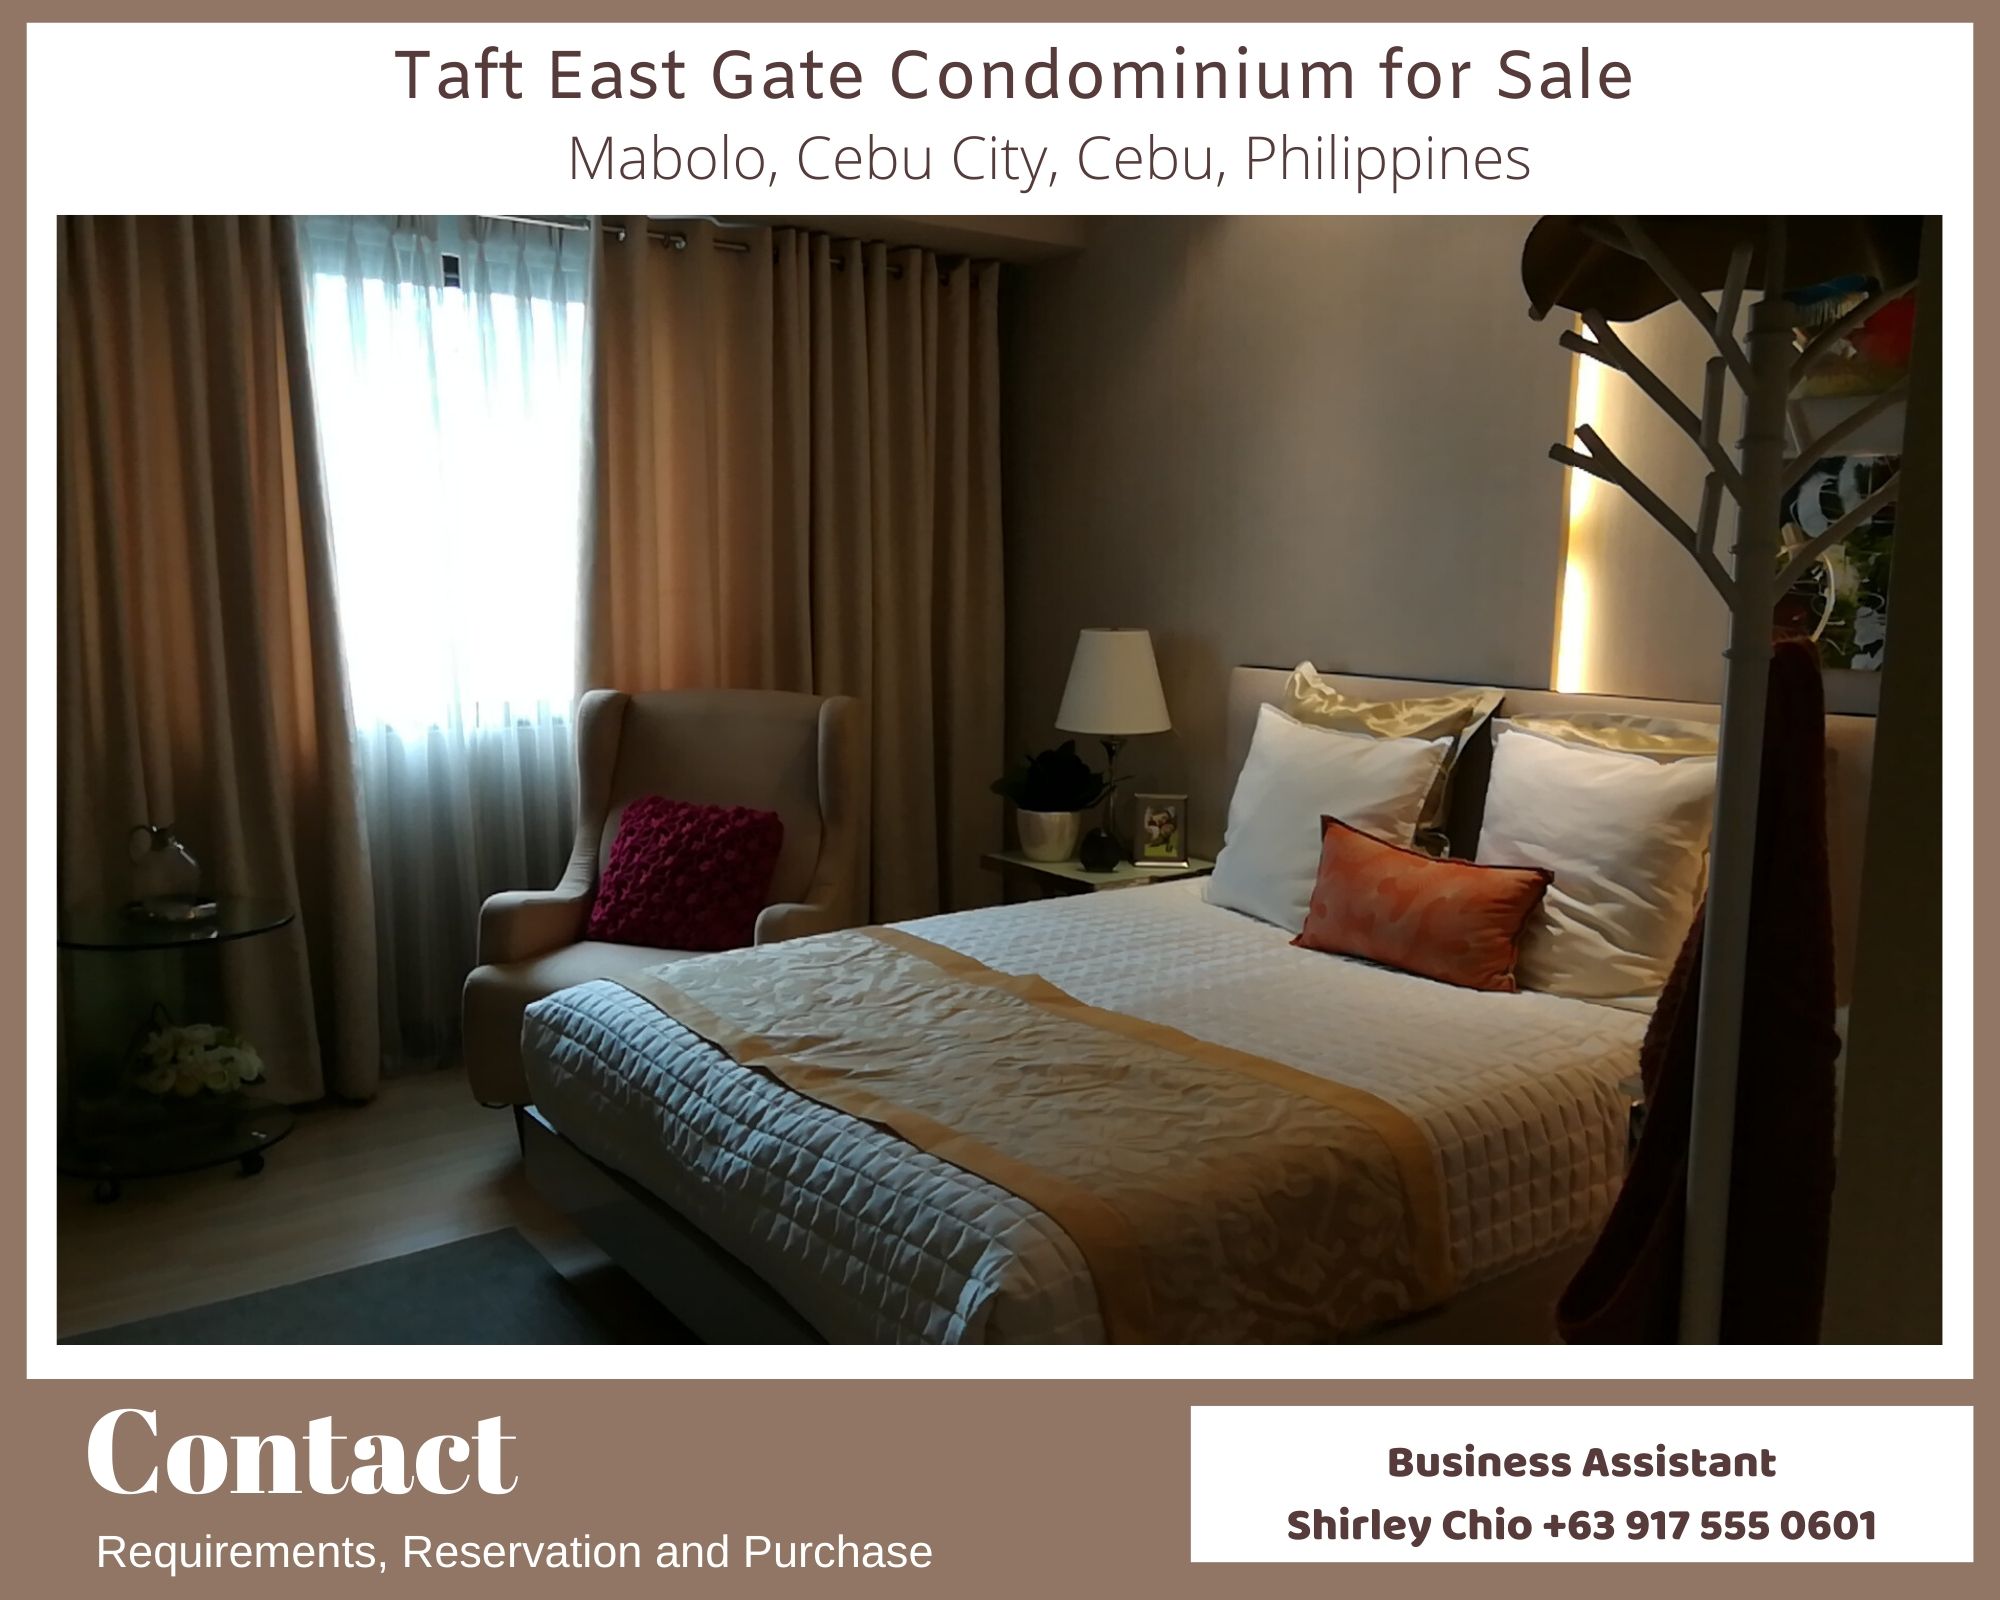 Taft East Gate Condominium for Sale Cebu City Philippines featured image